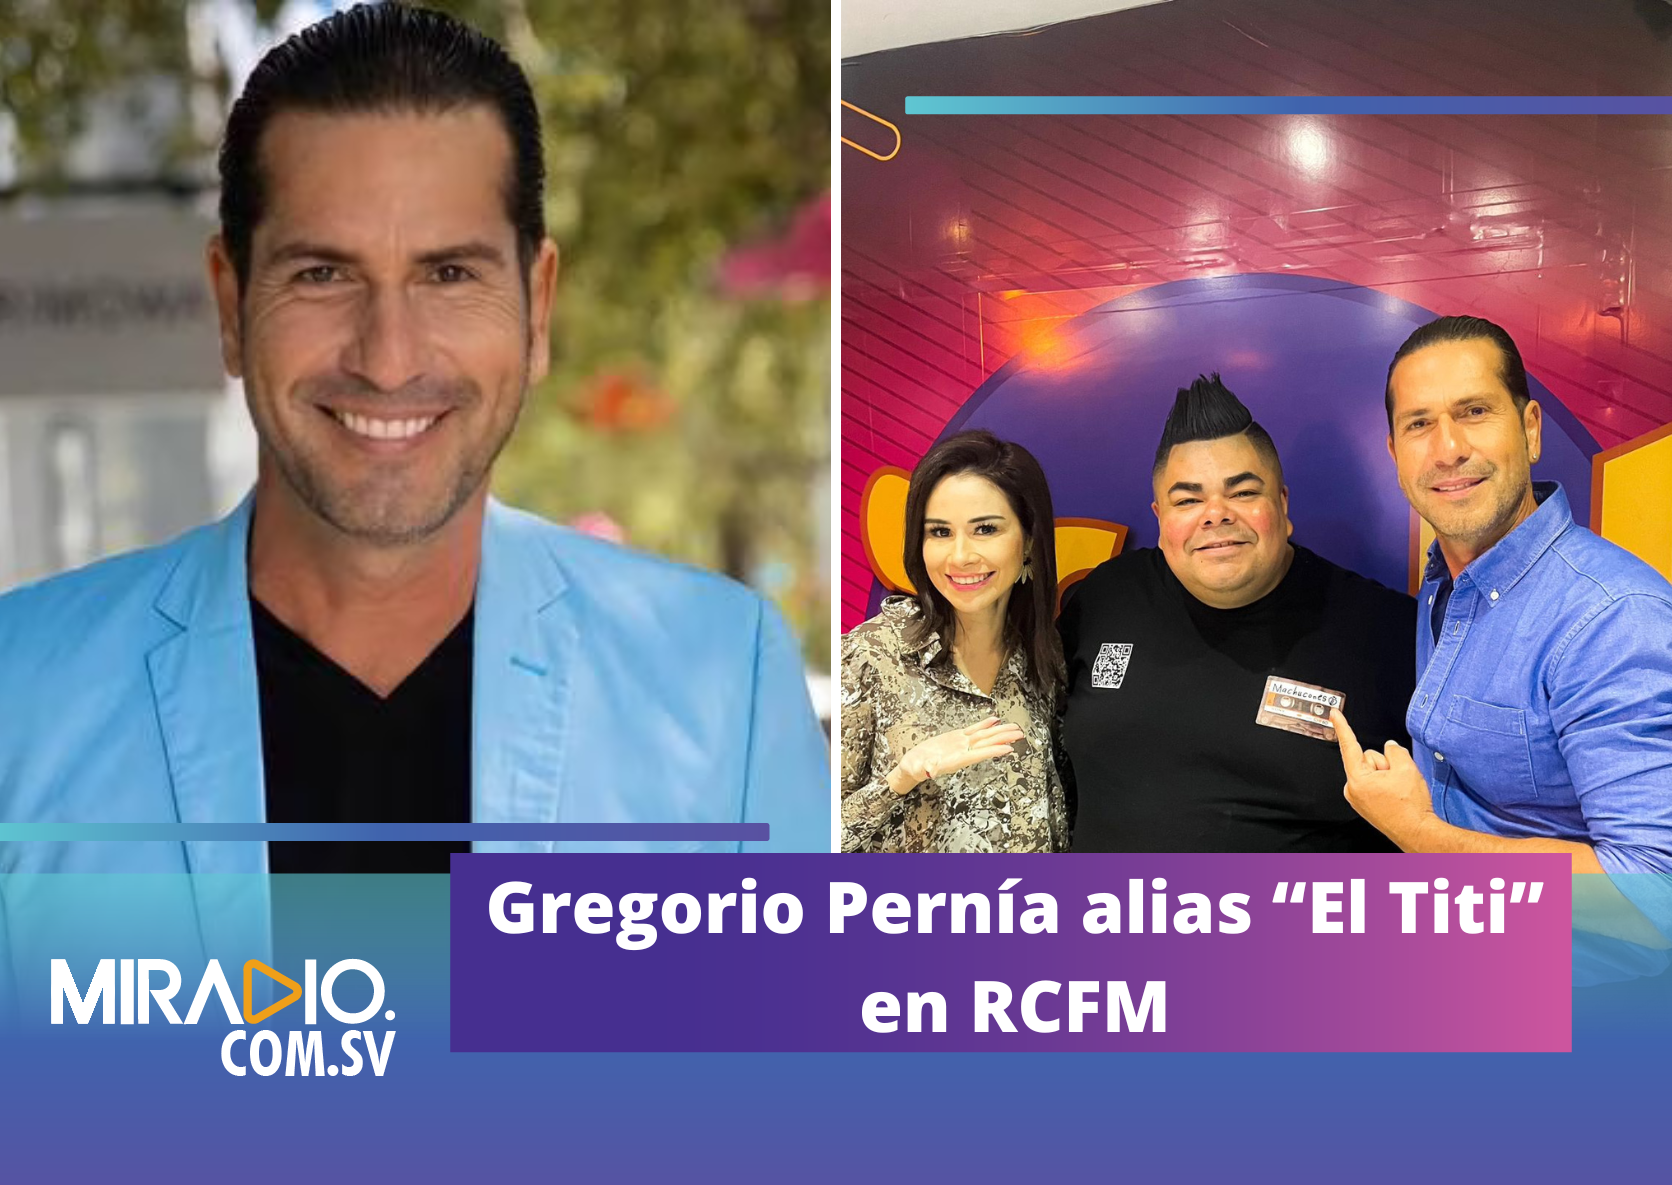 Gregorio Pernía alias “El Titi” en RCFM